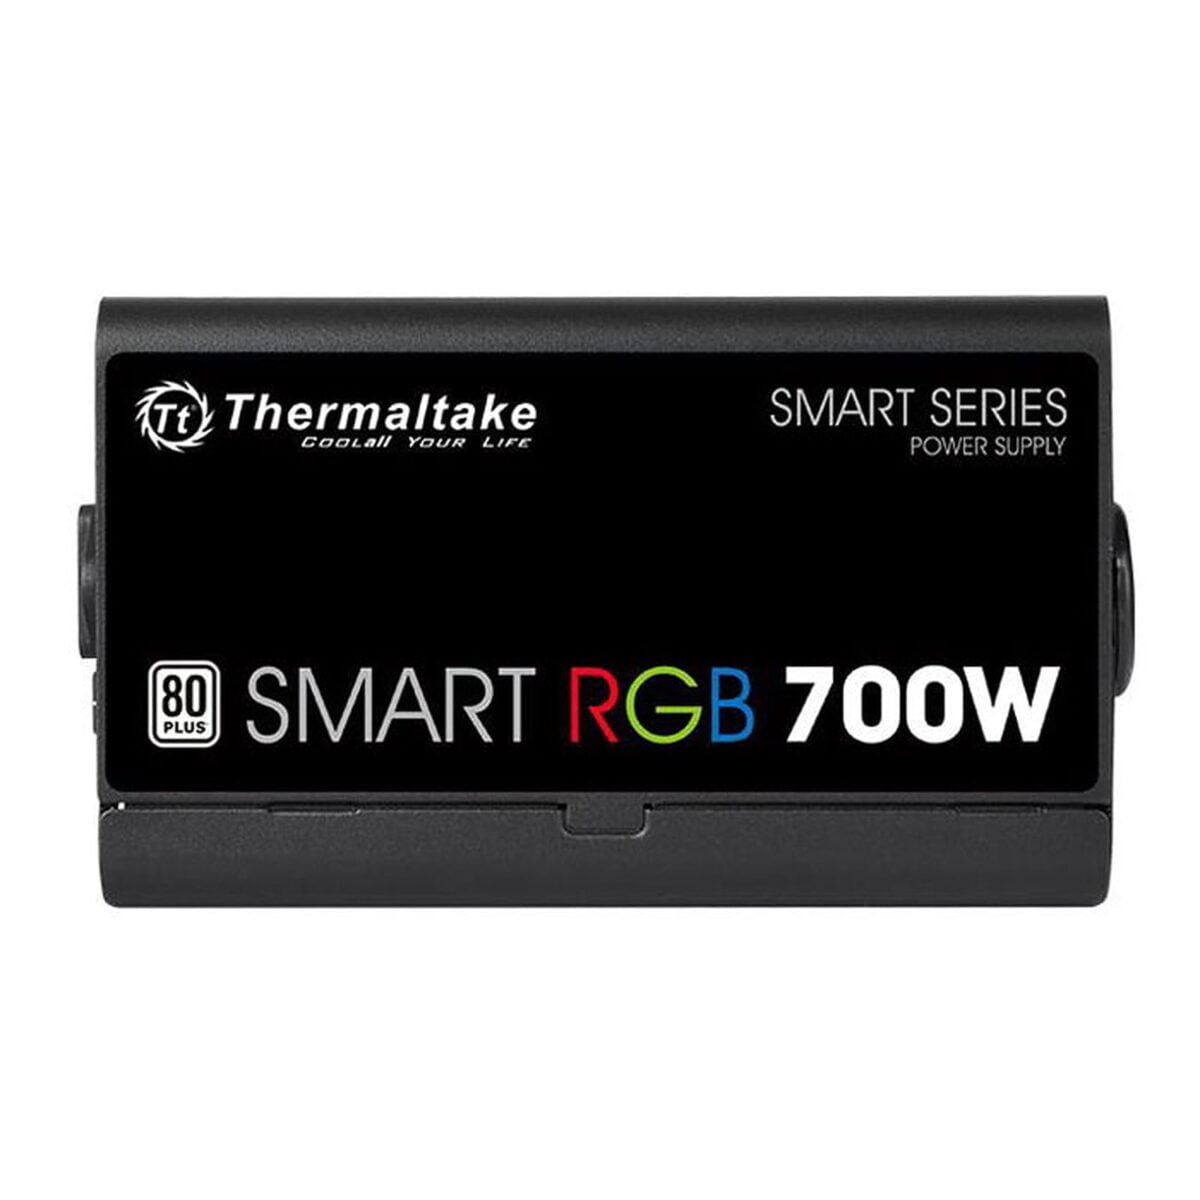 Achetez Thermaltake Smart RGB 700W en ligne sur AfricaGaming.ma ✓ Meilleur prix au Maroc